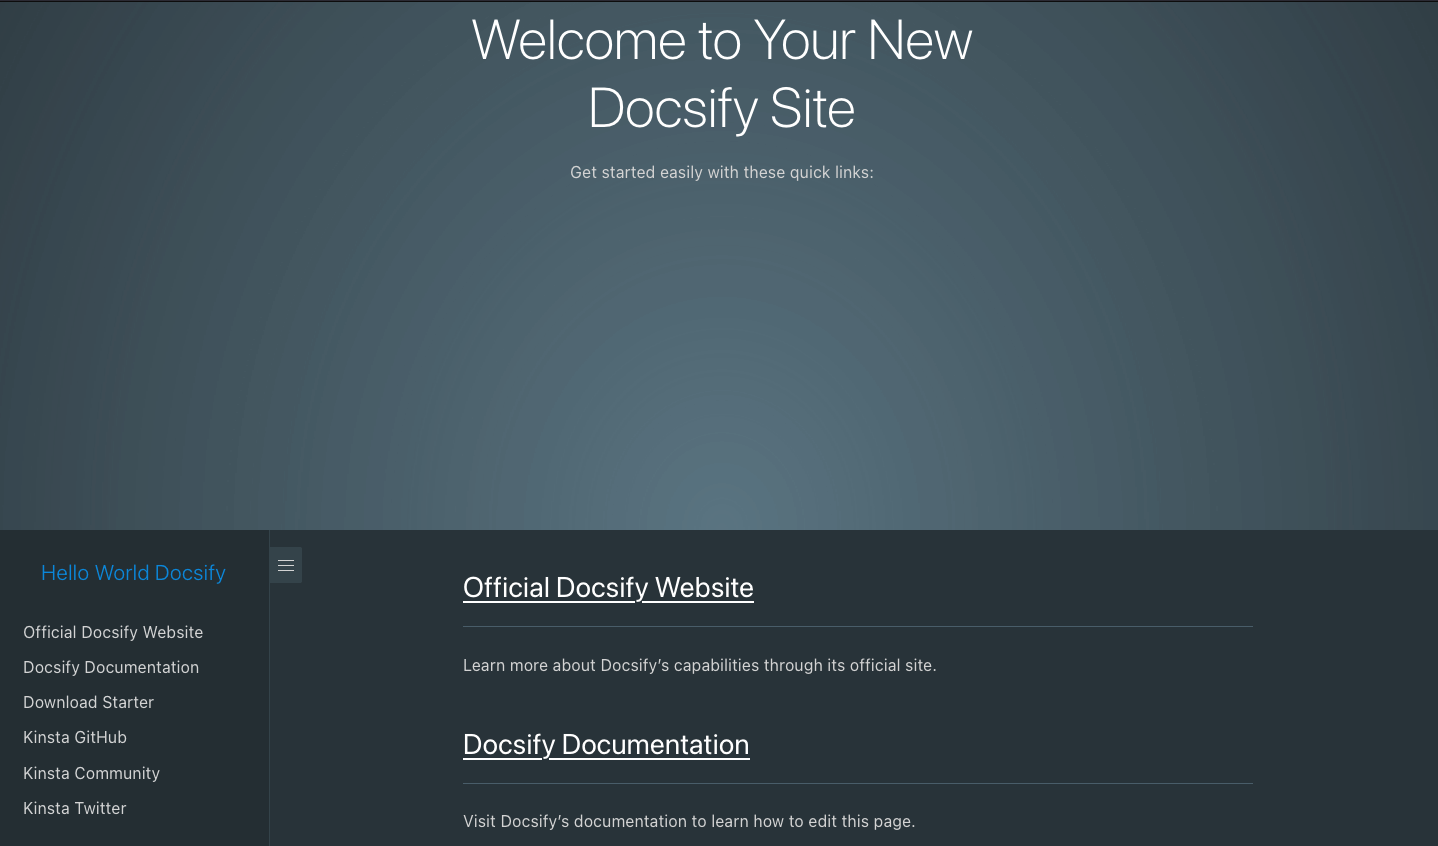 Página de boas-vindas do Docsify após a implantação bem-sucedida do Docsify.